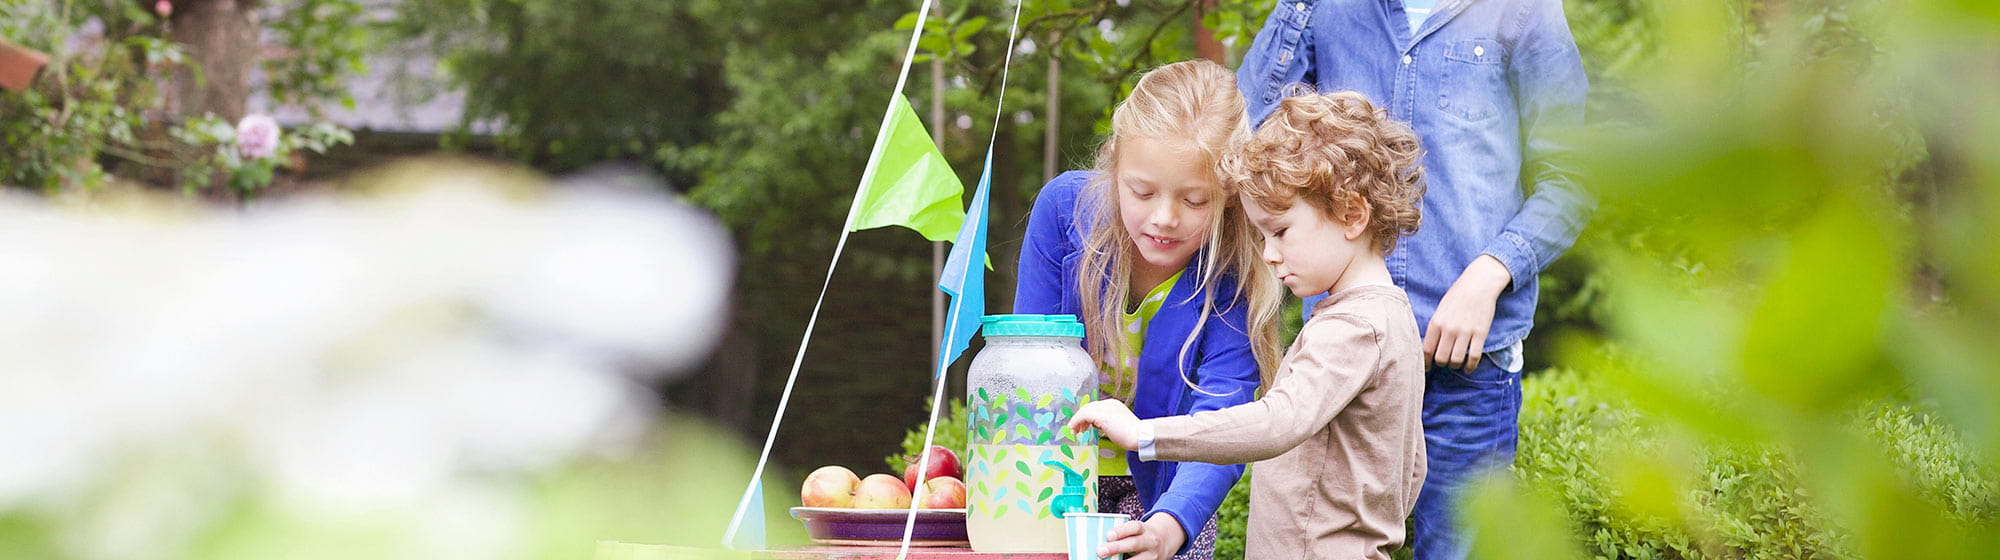 Des enfants qui se servent de la limonade dans un jardin  